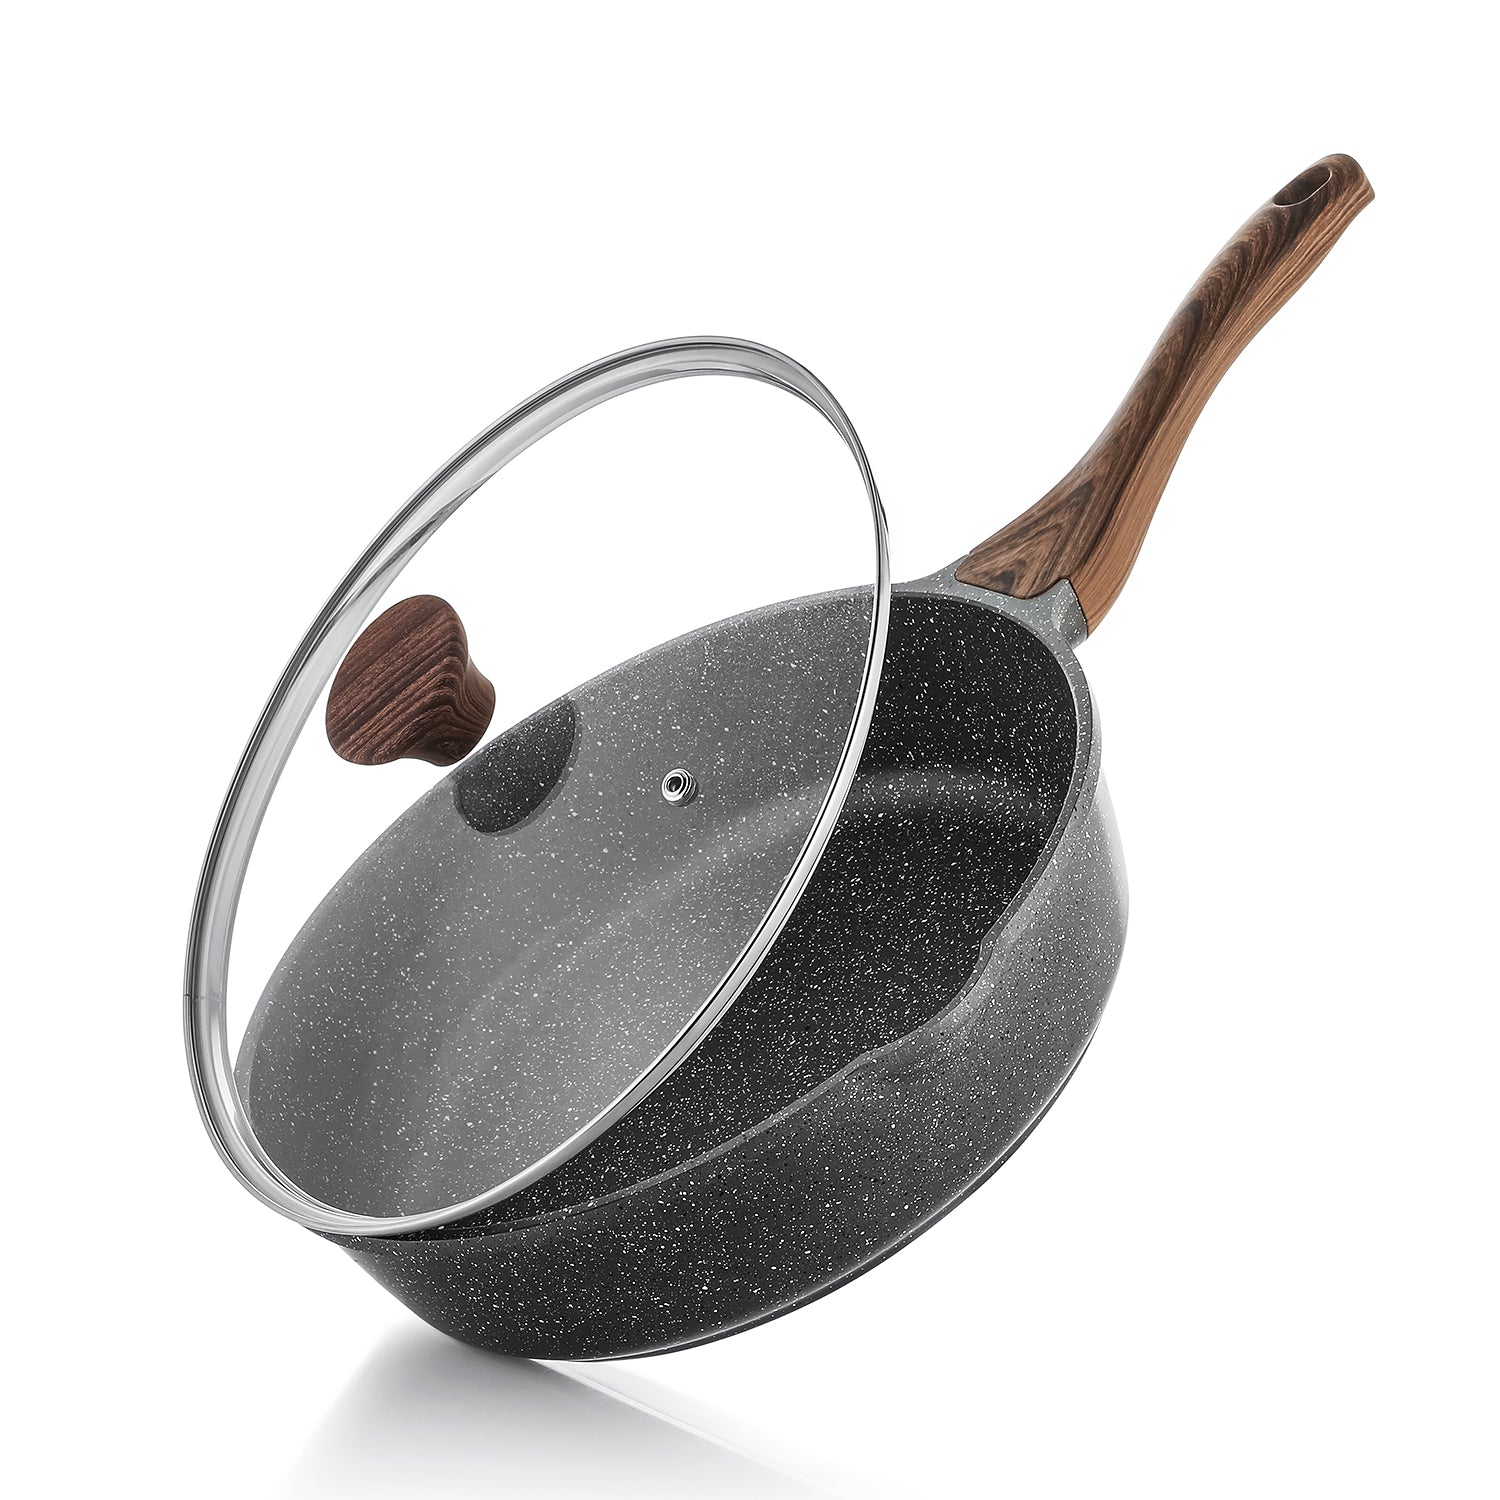 Sensarte Granite Nonstick Deep Frying Pan with Lid